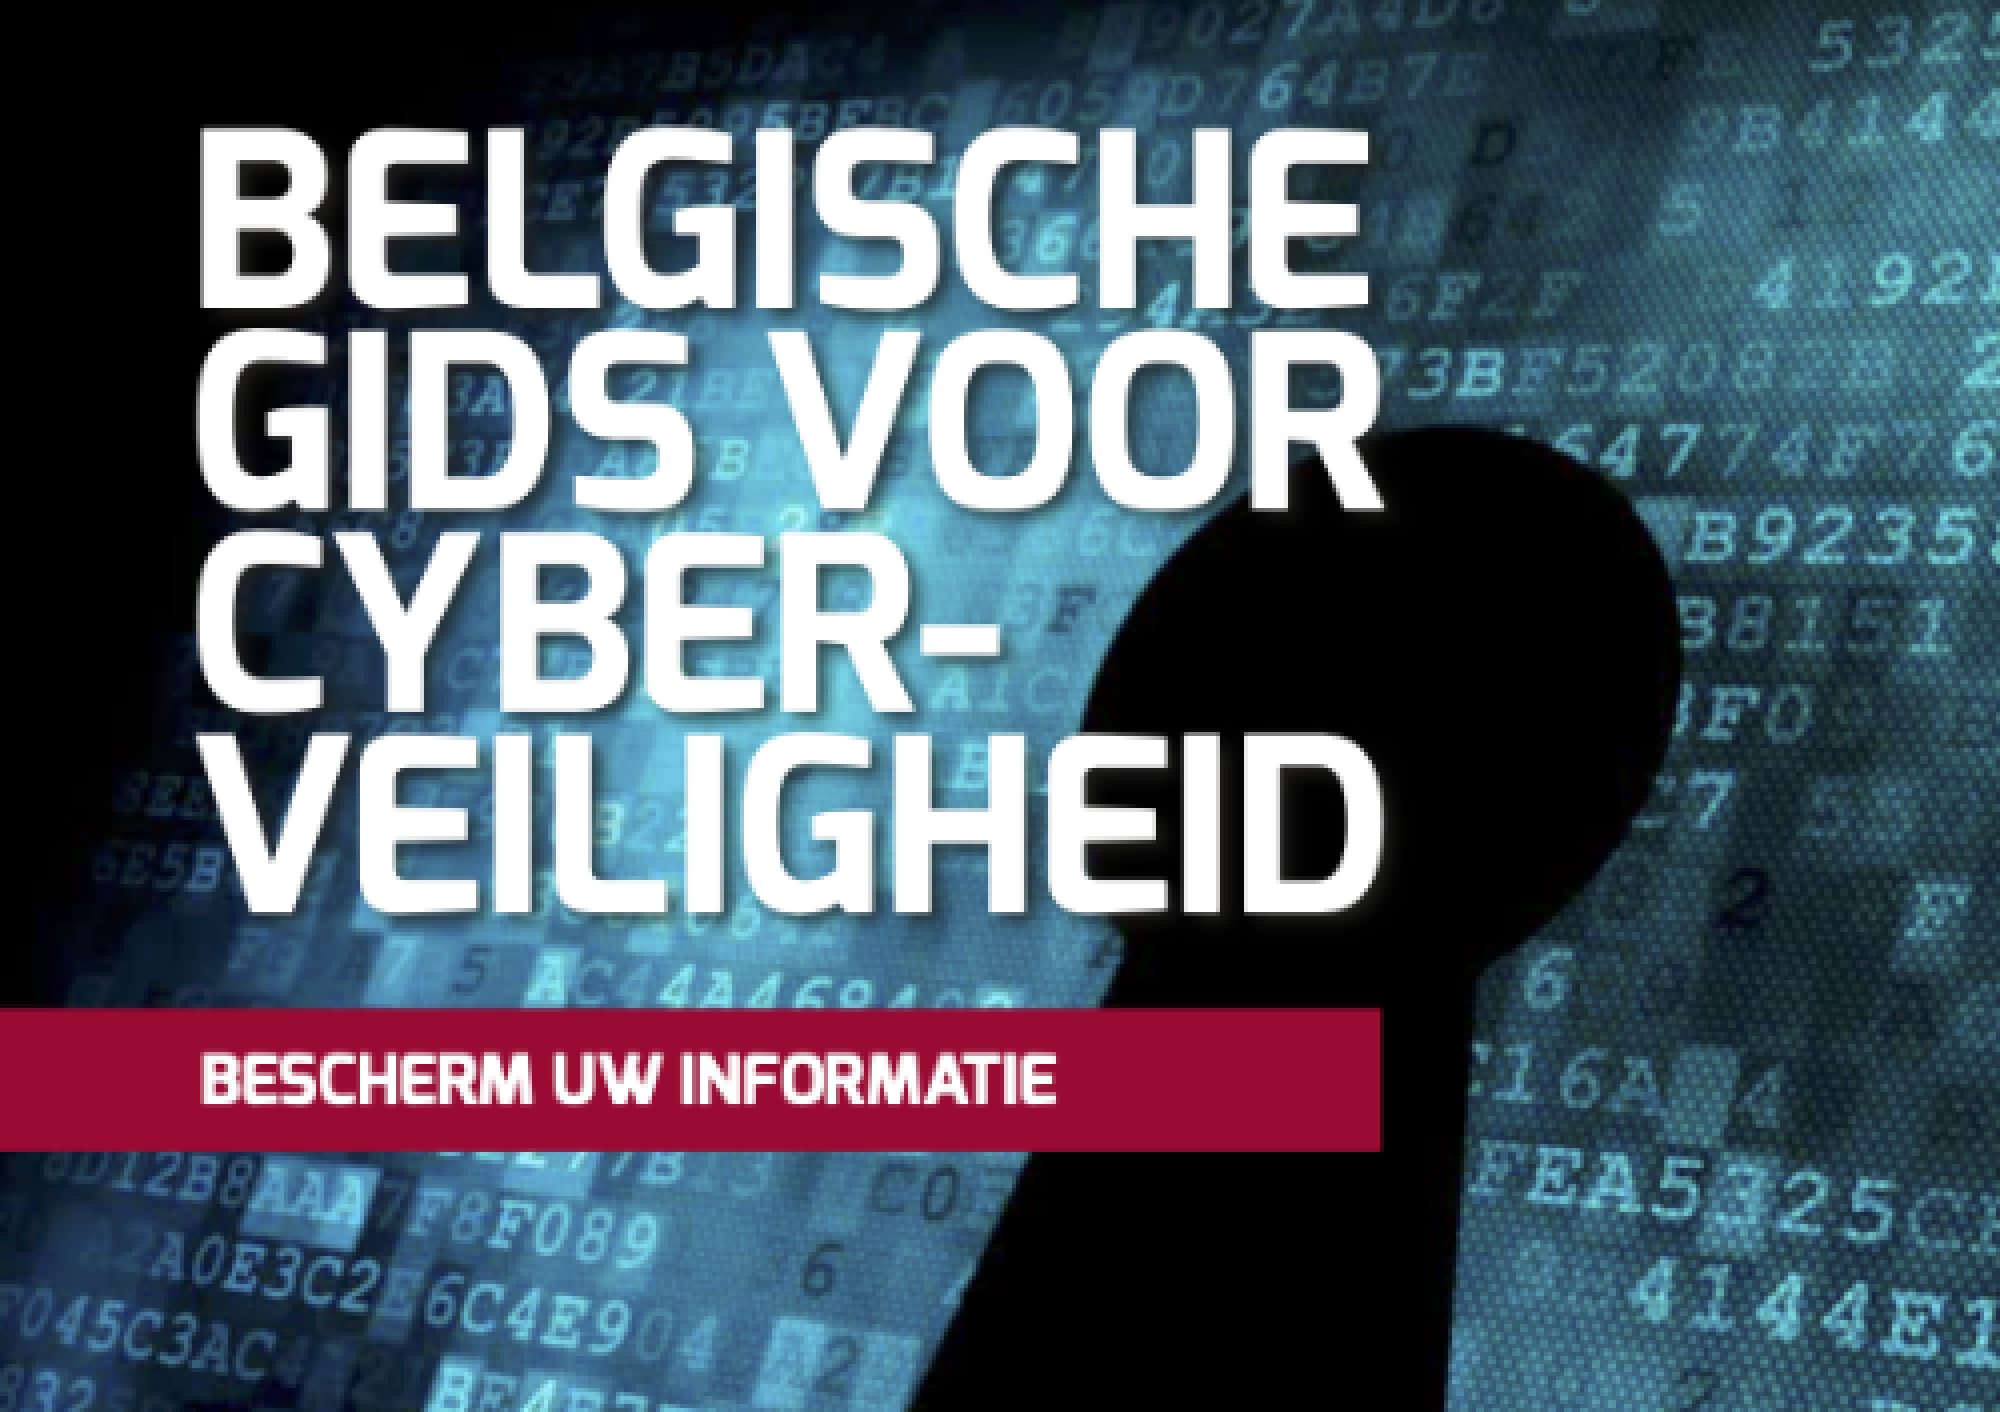 Download de gids: De Belgische gids voor cyberveiligheid.